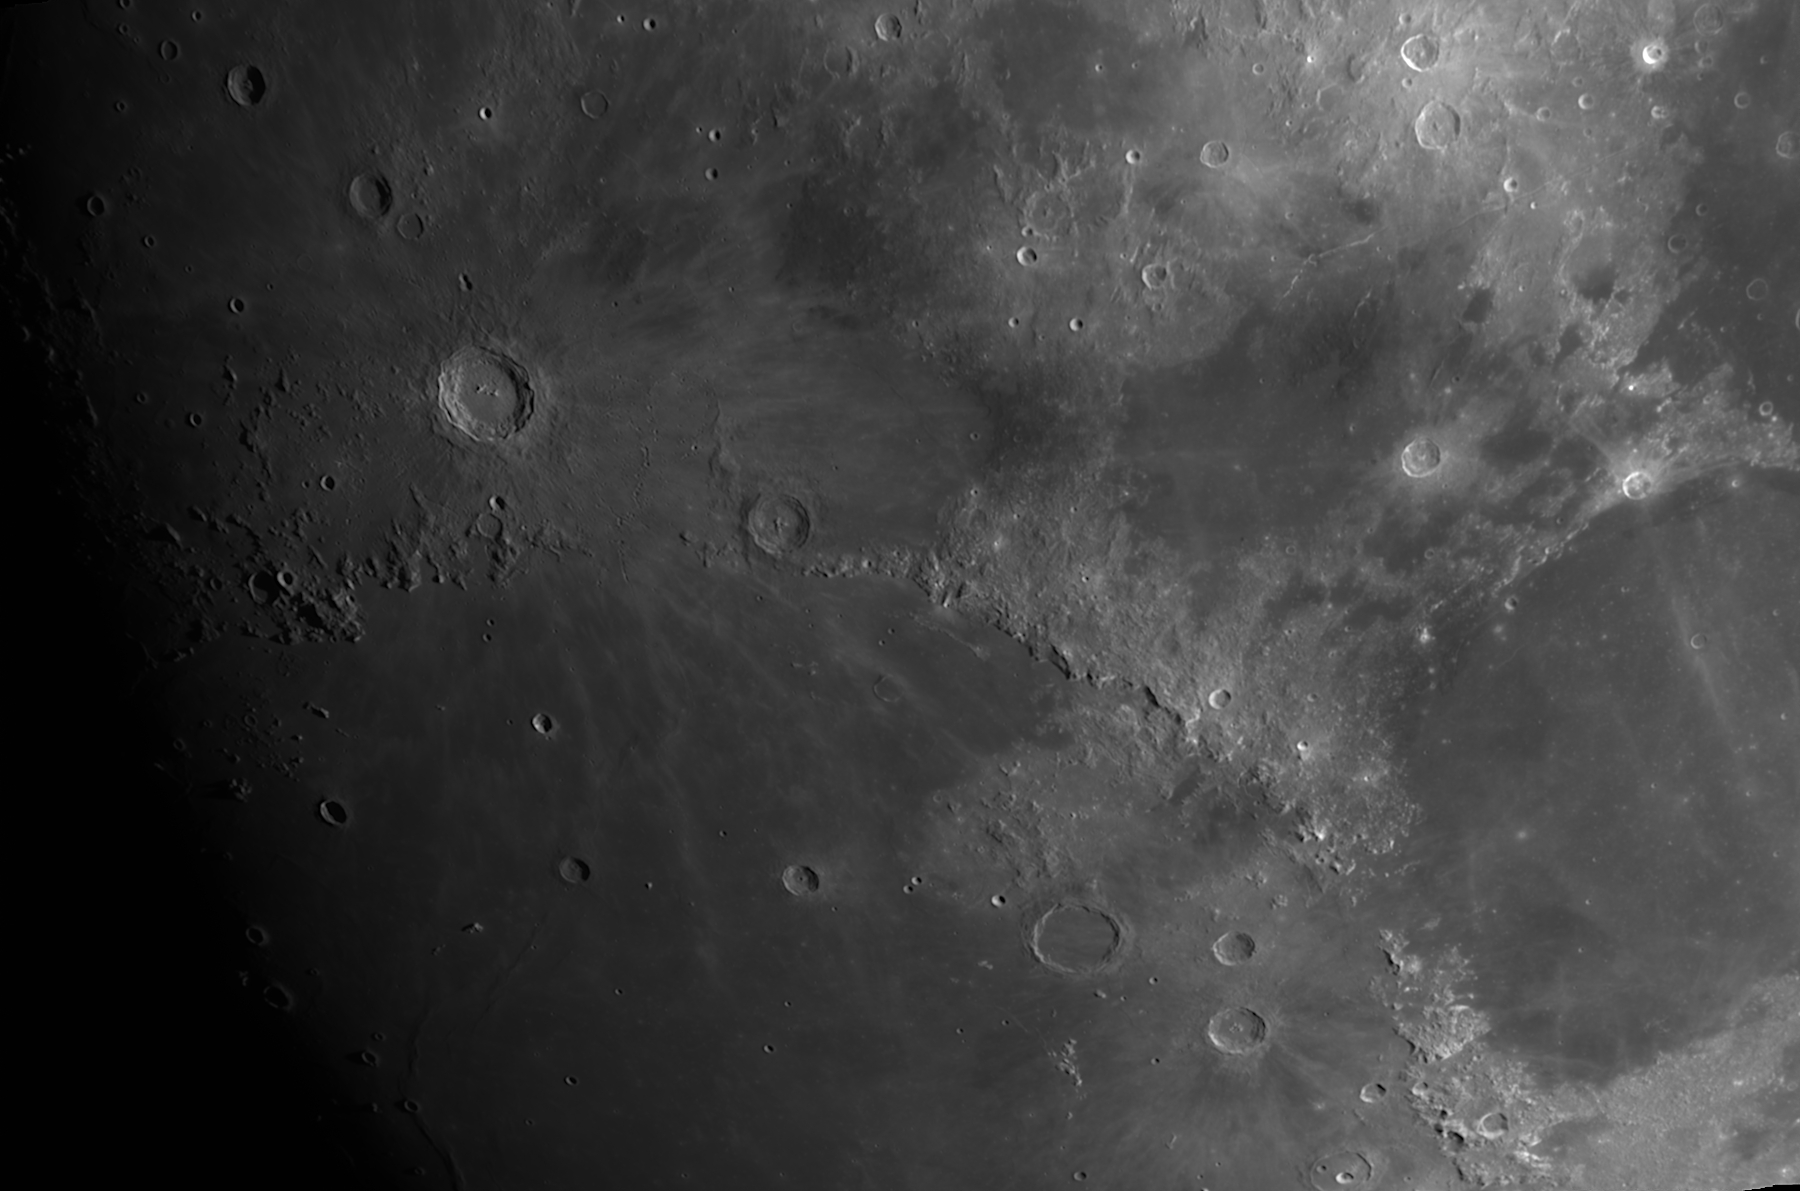 Copernicus, Eratosthenes, Montes Apenninus, Archimedes.jpg